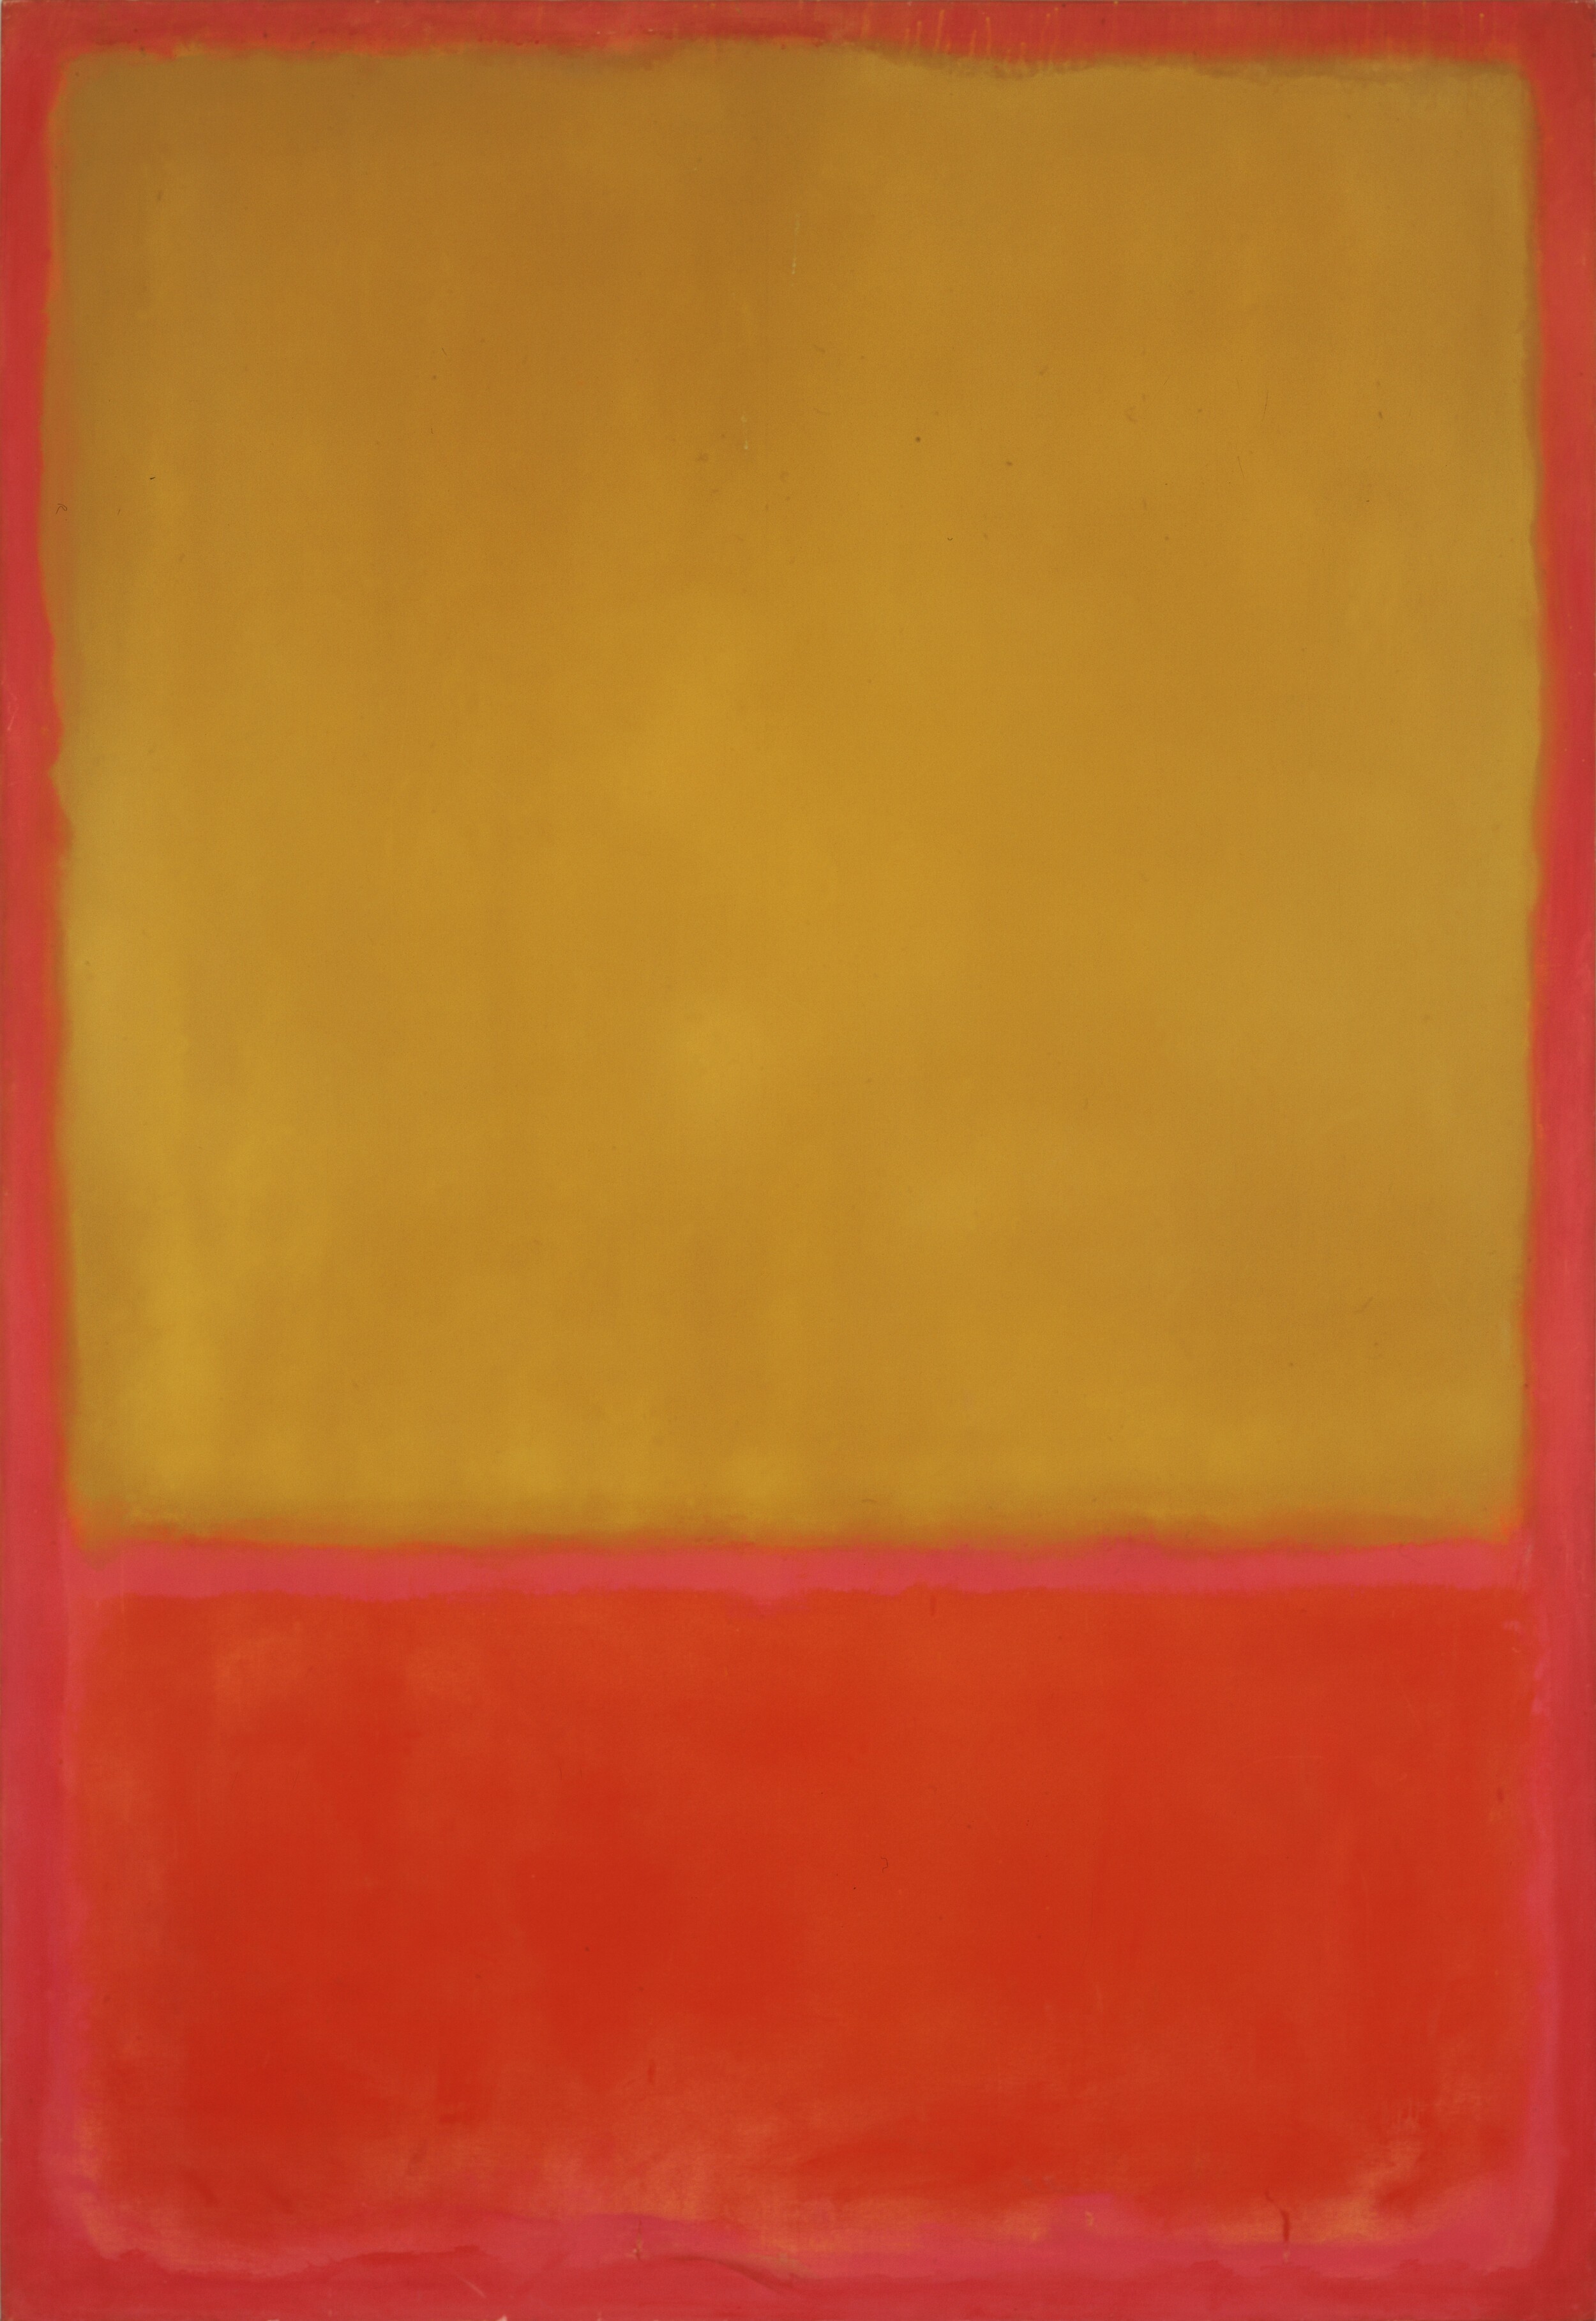 Mark Rothko, The Ochre (Ochre, Red on Red), 1954